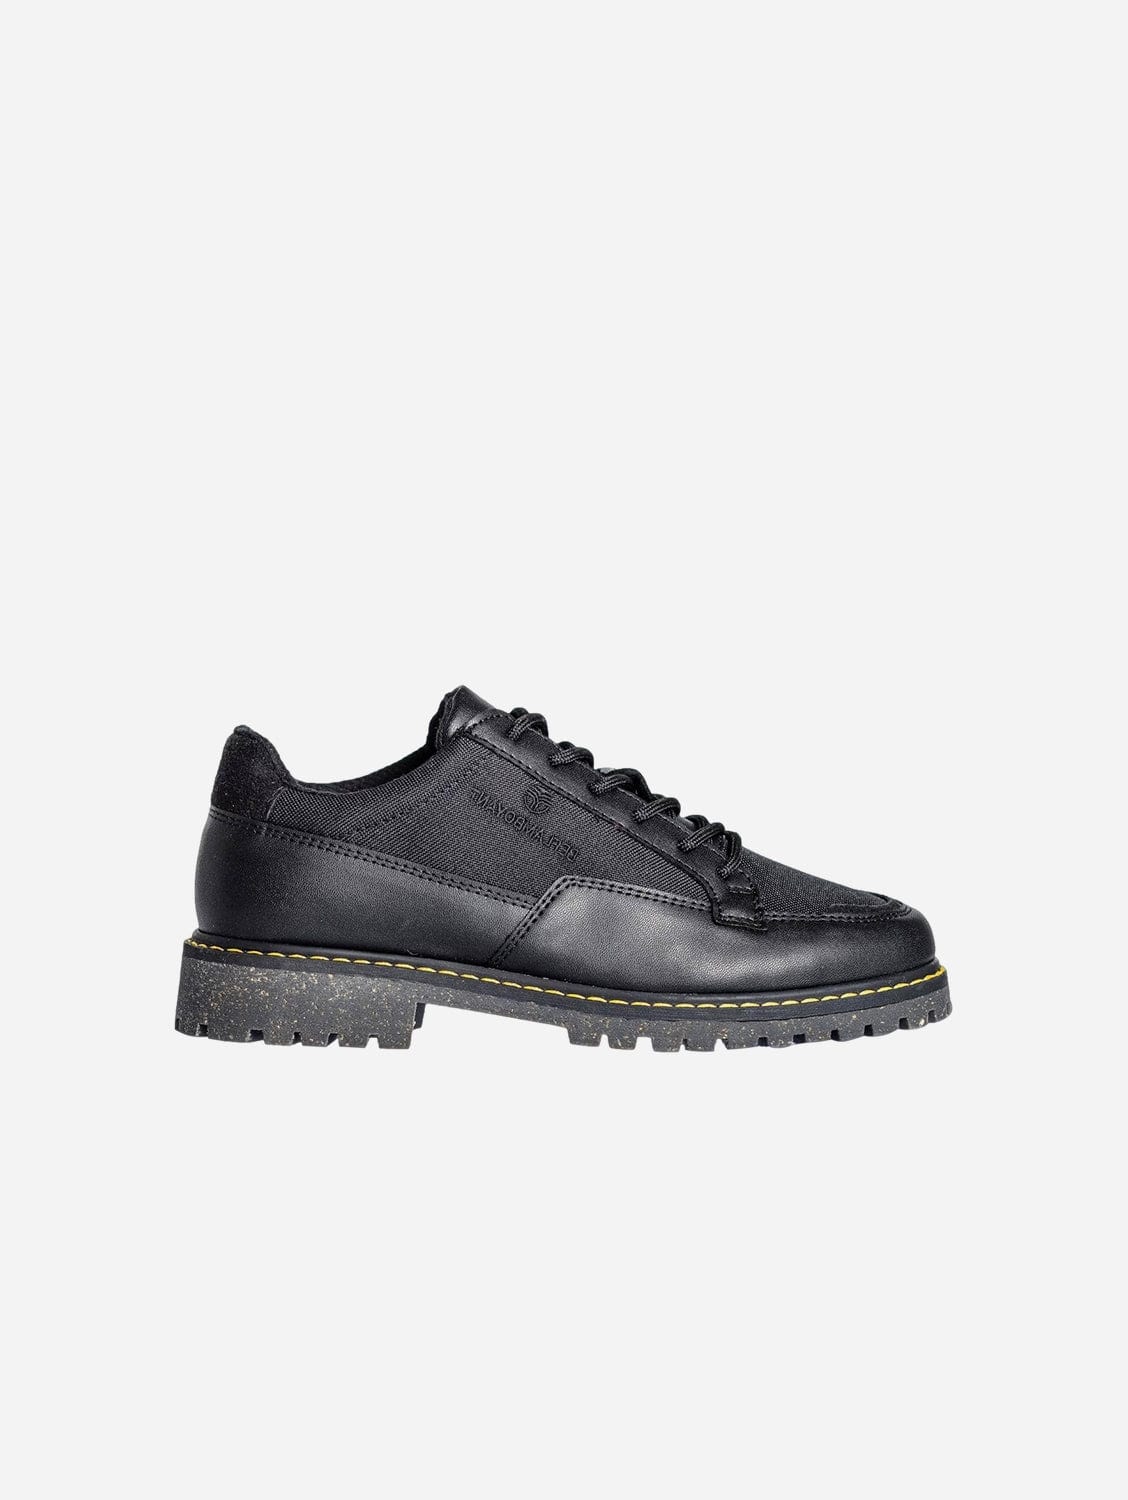 BEFLAMBOYANT Coco Unisex Vegan Corn Leather Shoes | Black UK11 / EU46 / US12